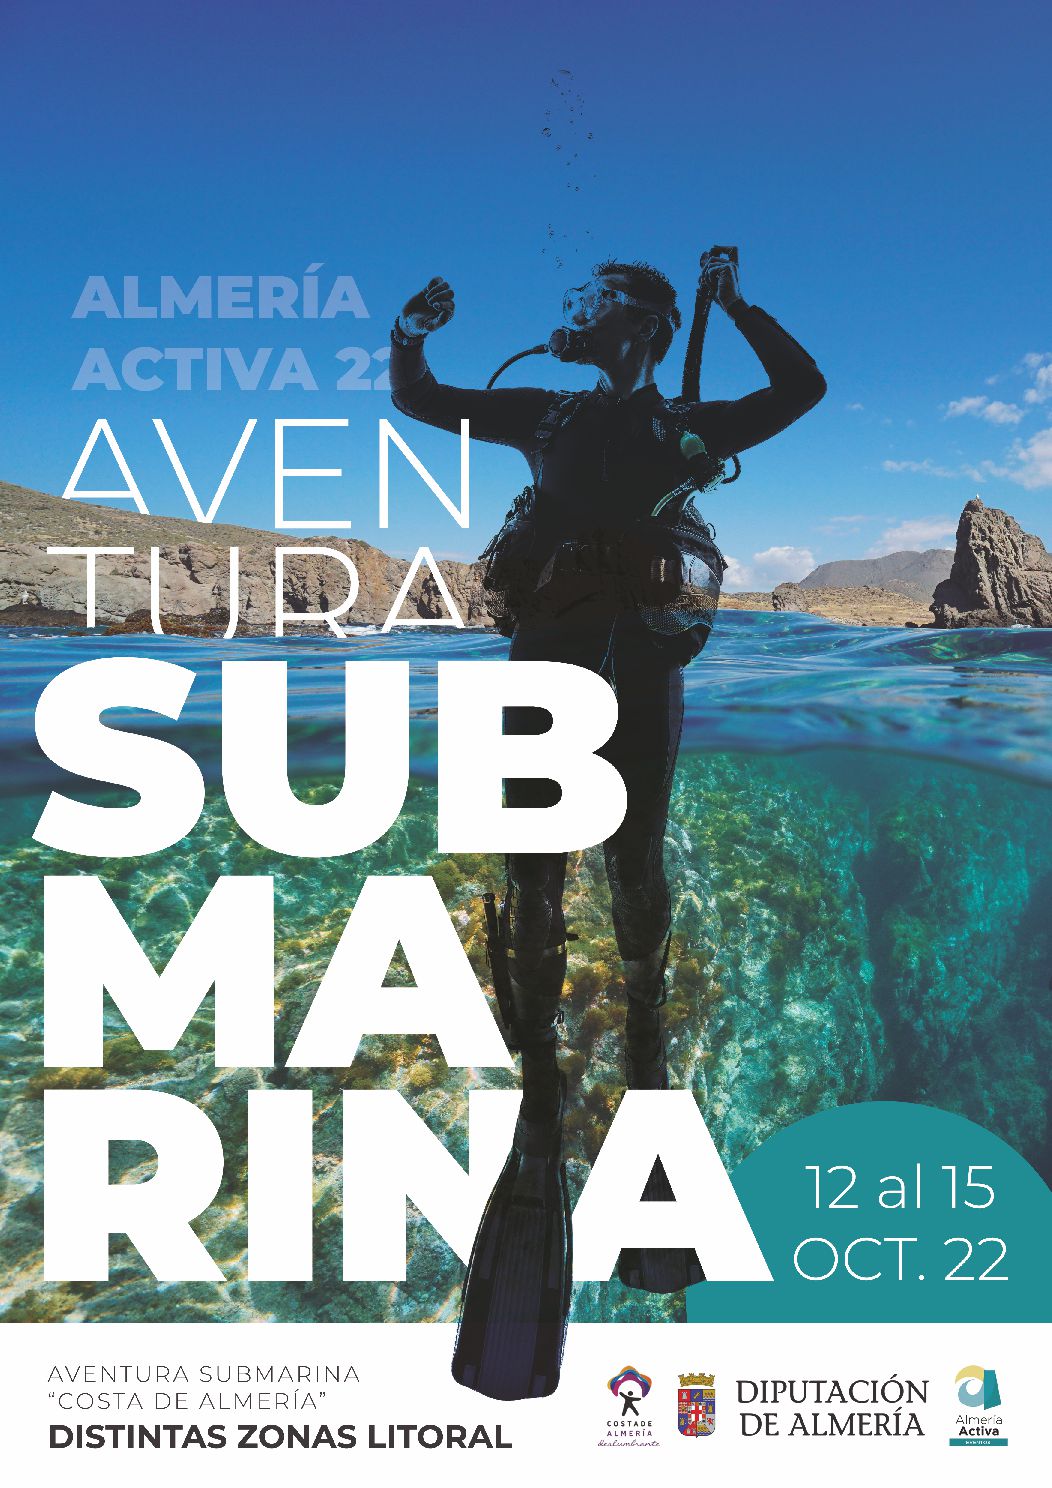 Almería Activa 2022. Aventura Submarina Costa de Almería (Zonas del litoral del 12 al 15 Octubre)